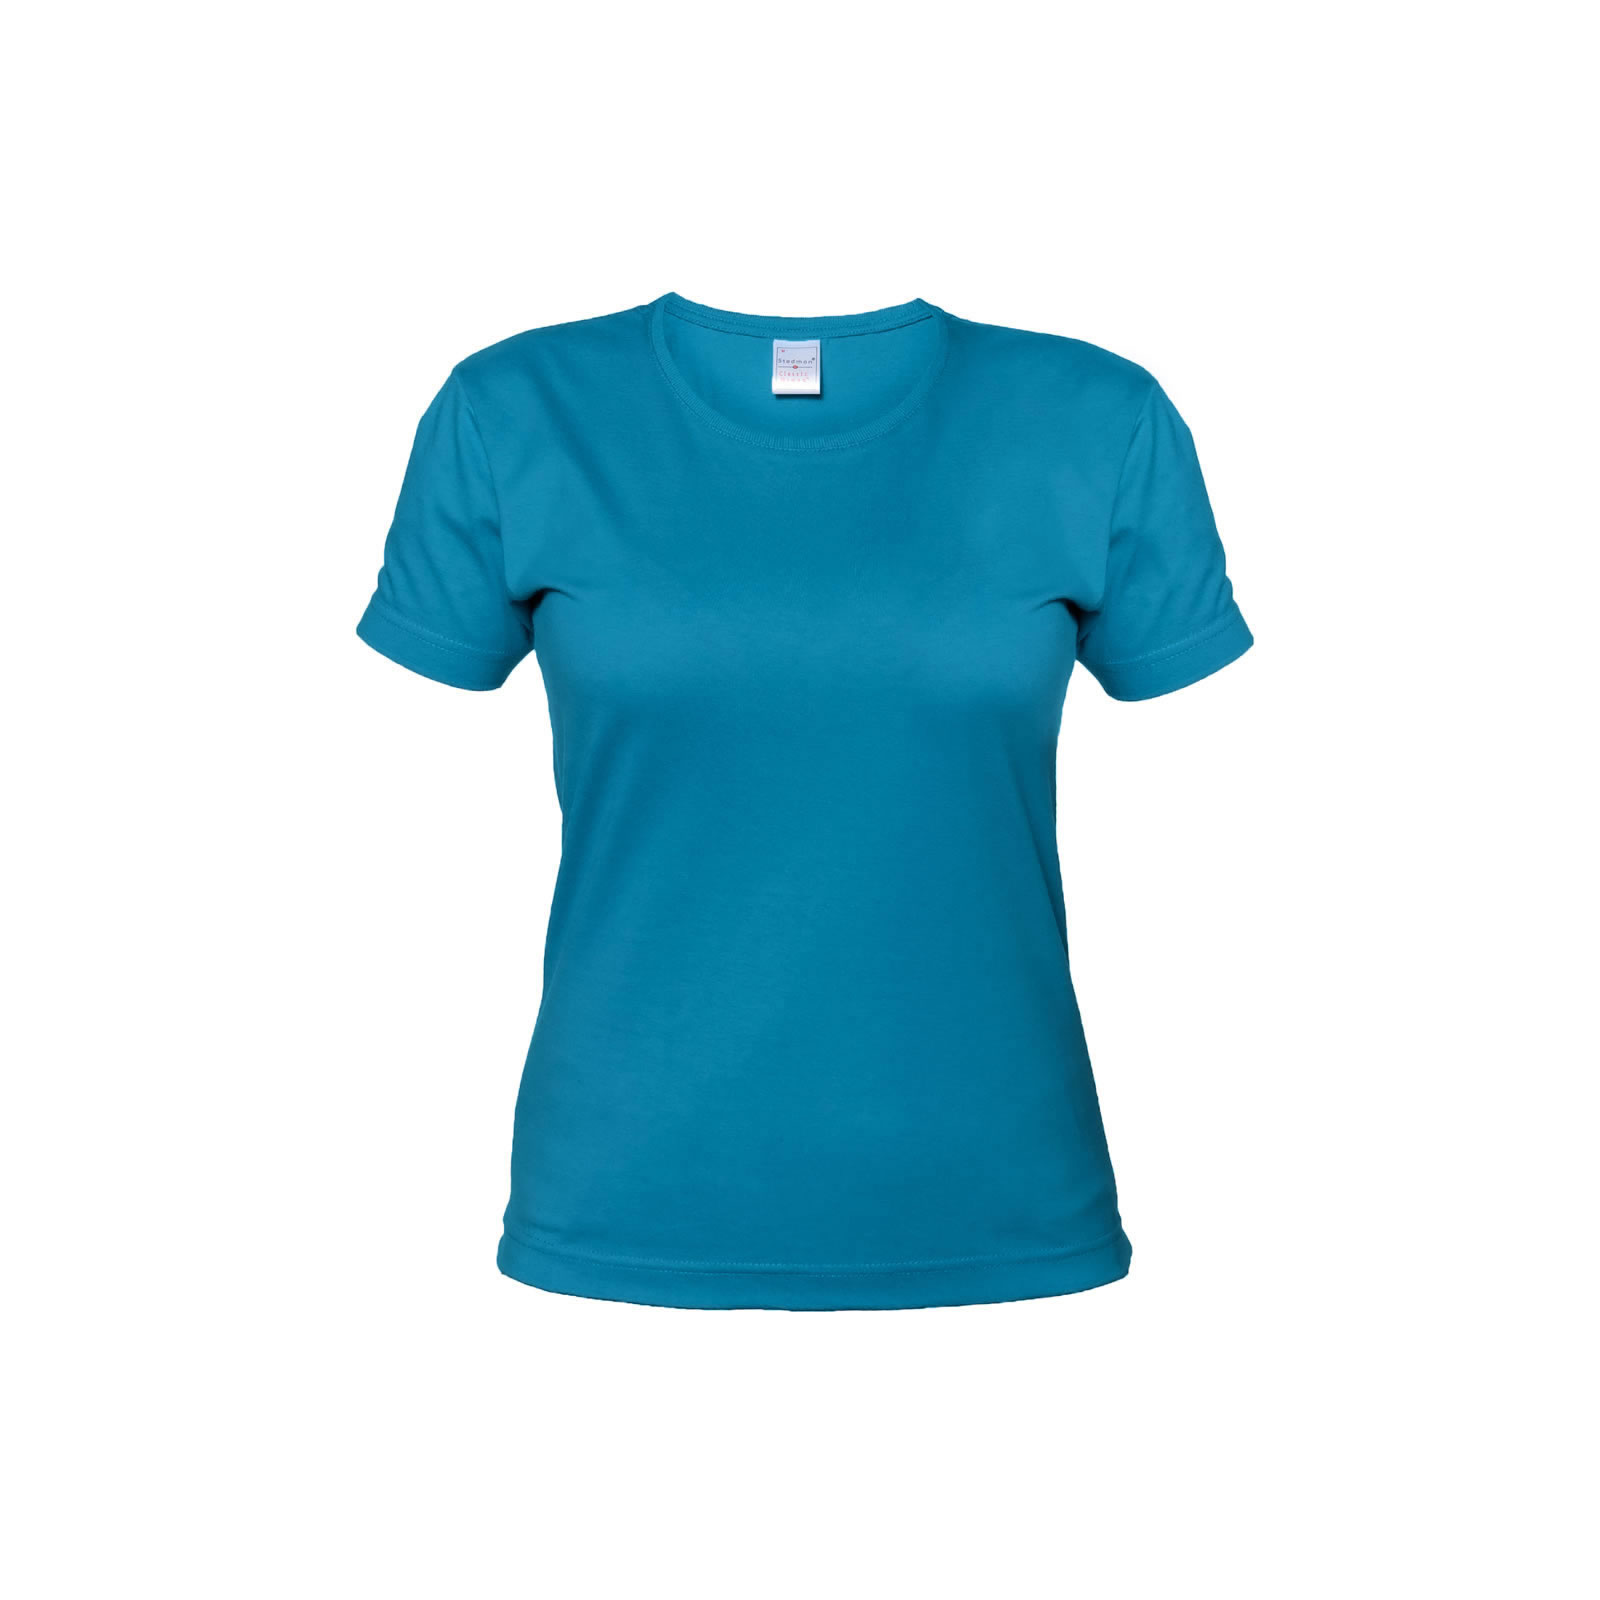 Zdjęcie T-shirt damski STEDMAN CLASSIC ST 2600 r. XL turku